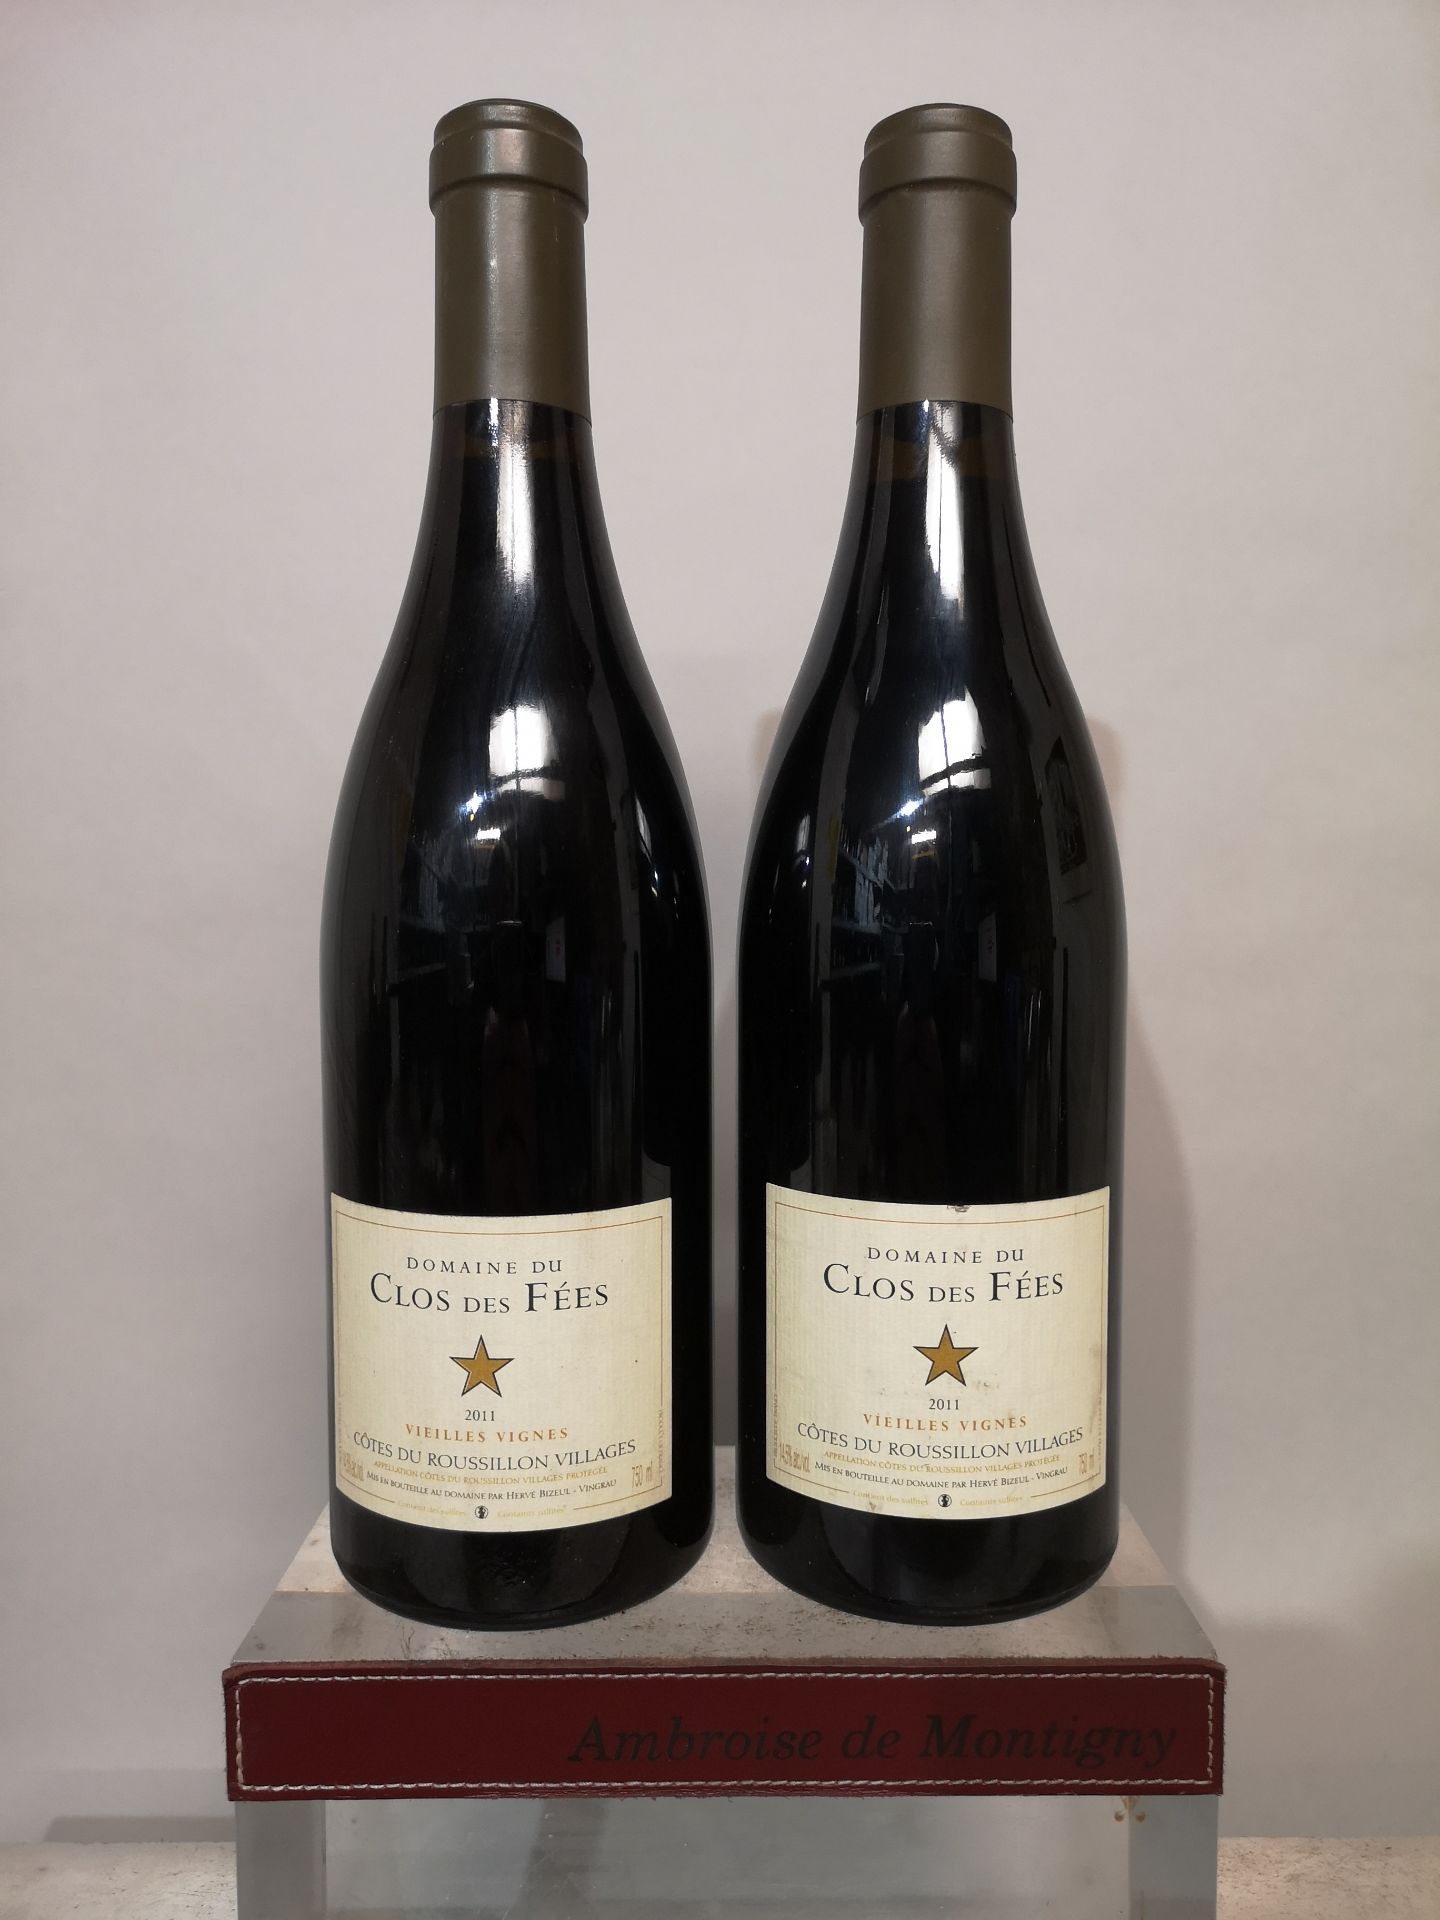 2 bottles Domaine du Clos des Fées Vieilles Vignes - Côtes du Roussillon 2011.Slightly stained label